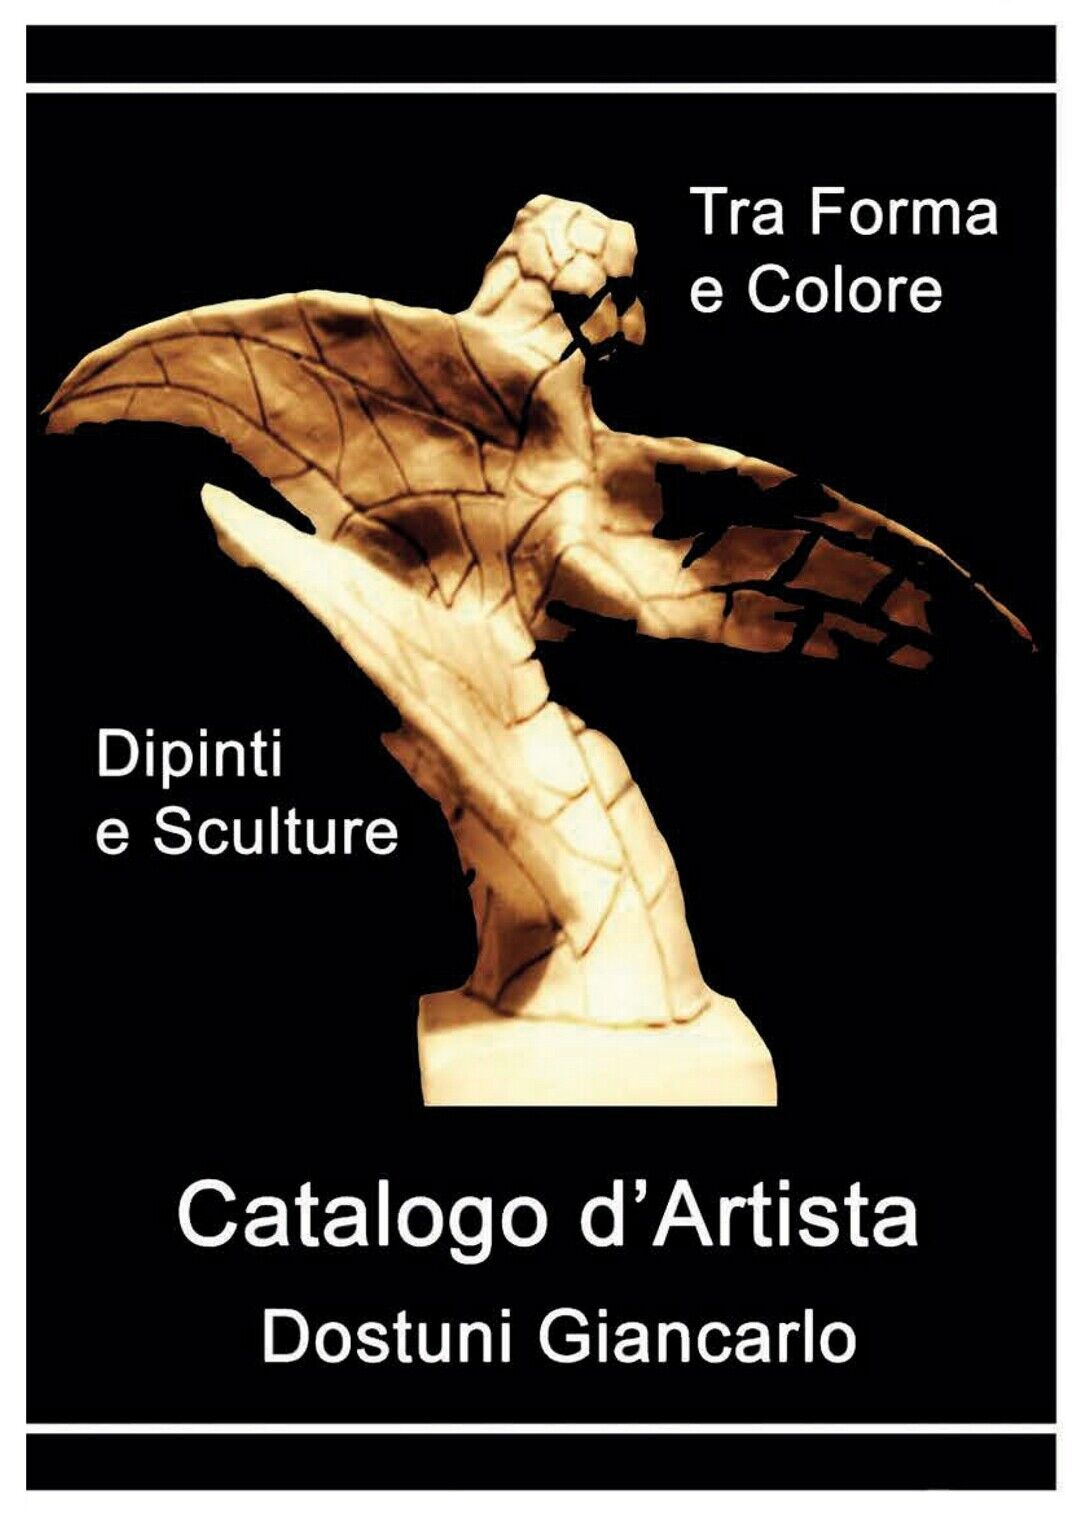 Catalogo d'Artista di Dostuni Giancarlo. Tra Forma e Colore, di G: Dostuni, 2020